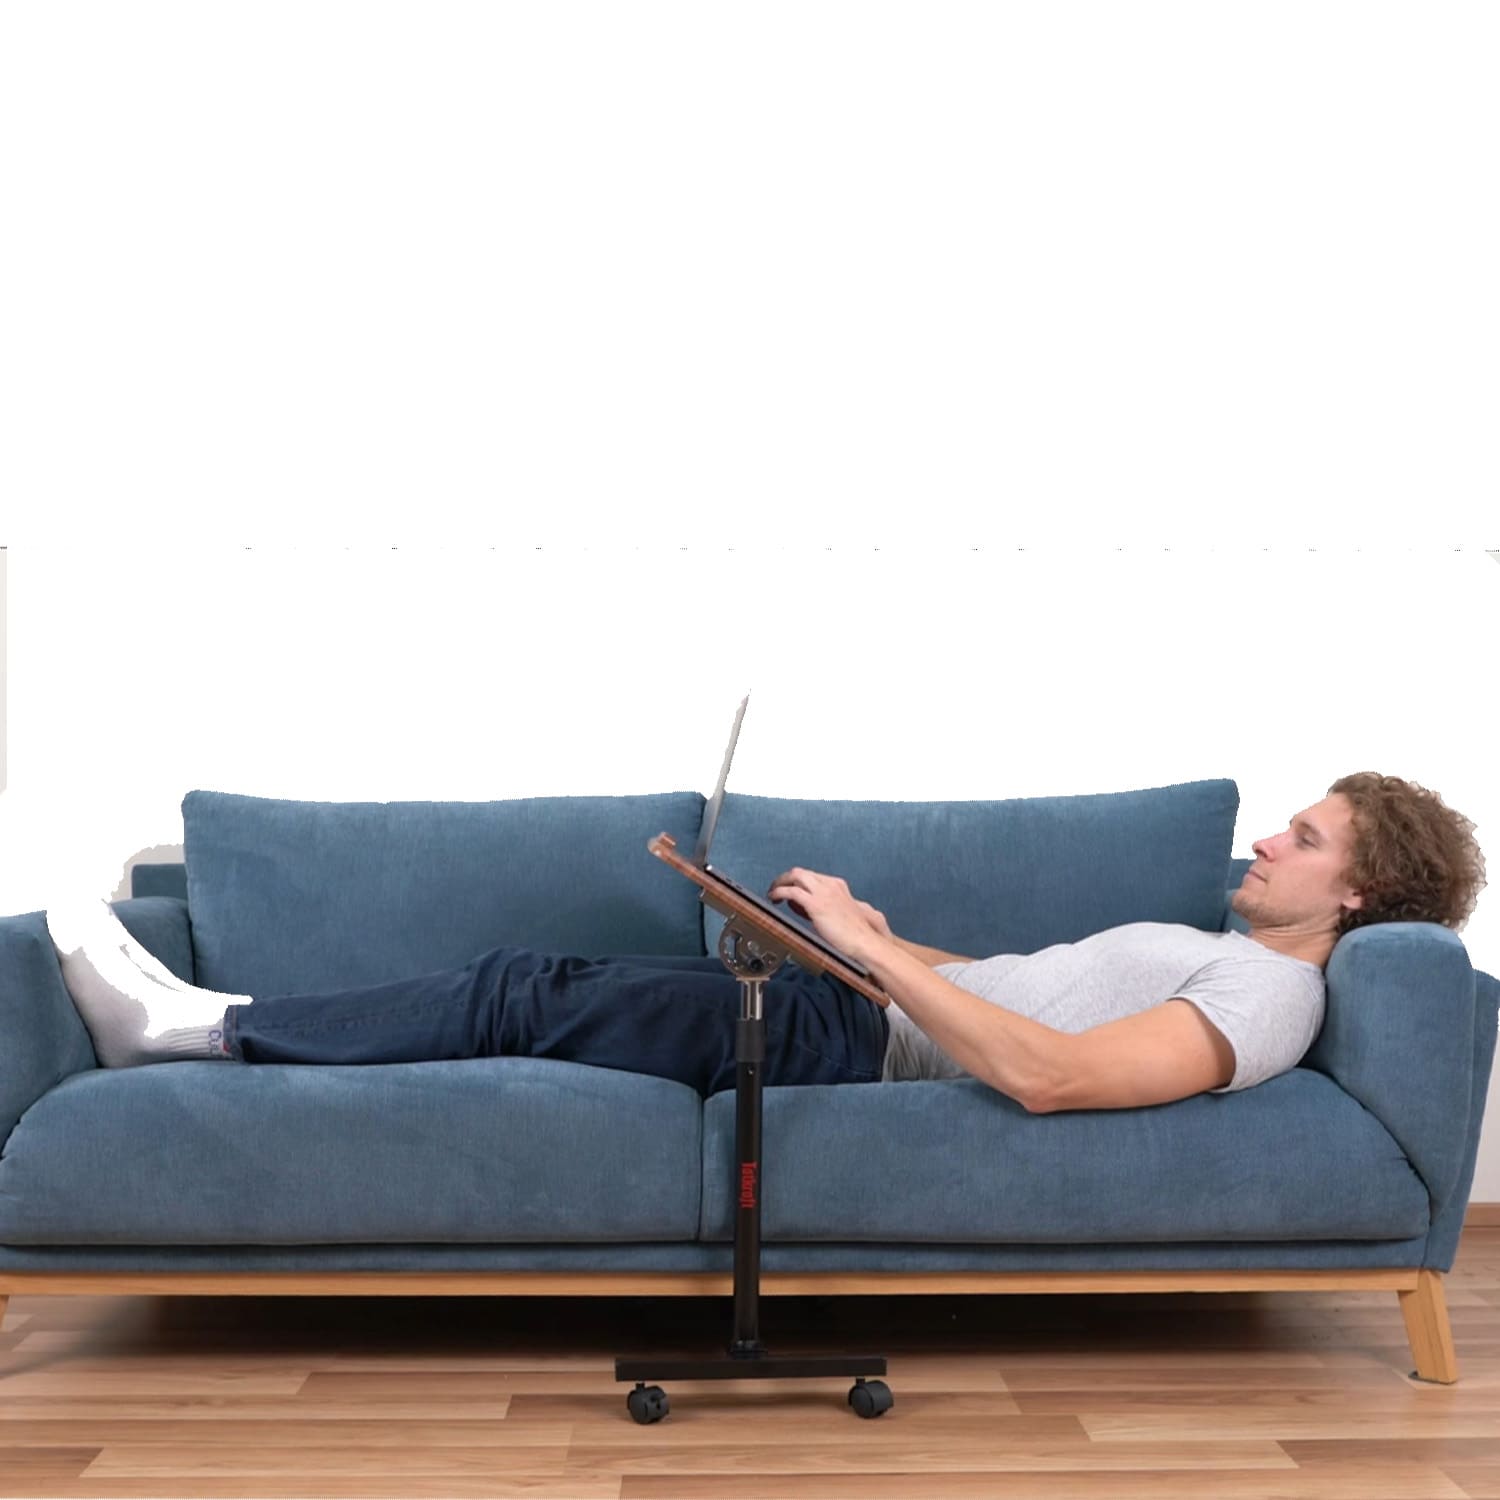 Laptoptisch, Laptoptisch Höhenverstellbar, Laptoptisch für Couch, Couch Laptop Tisch, Tatkraft Gain